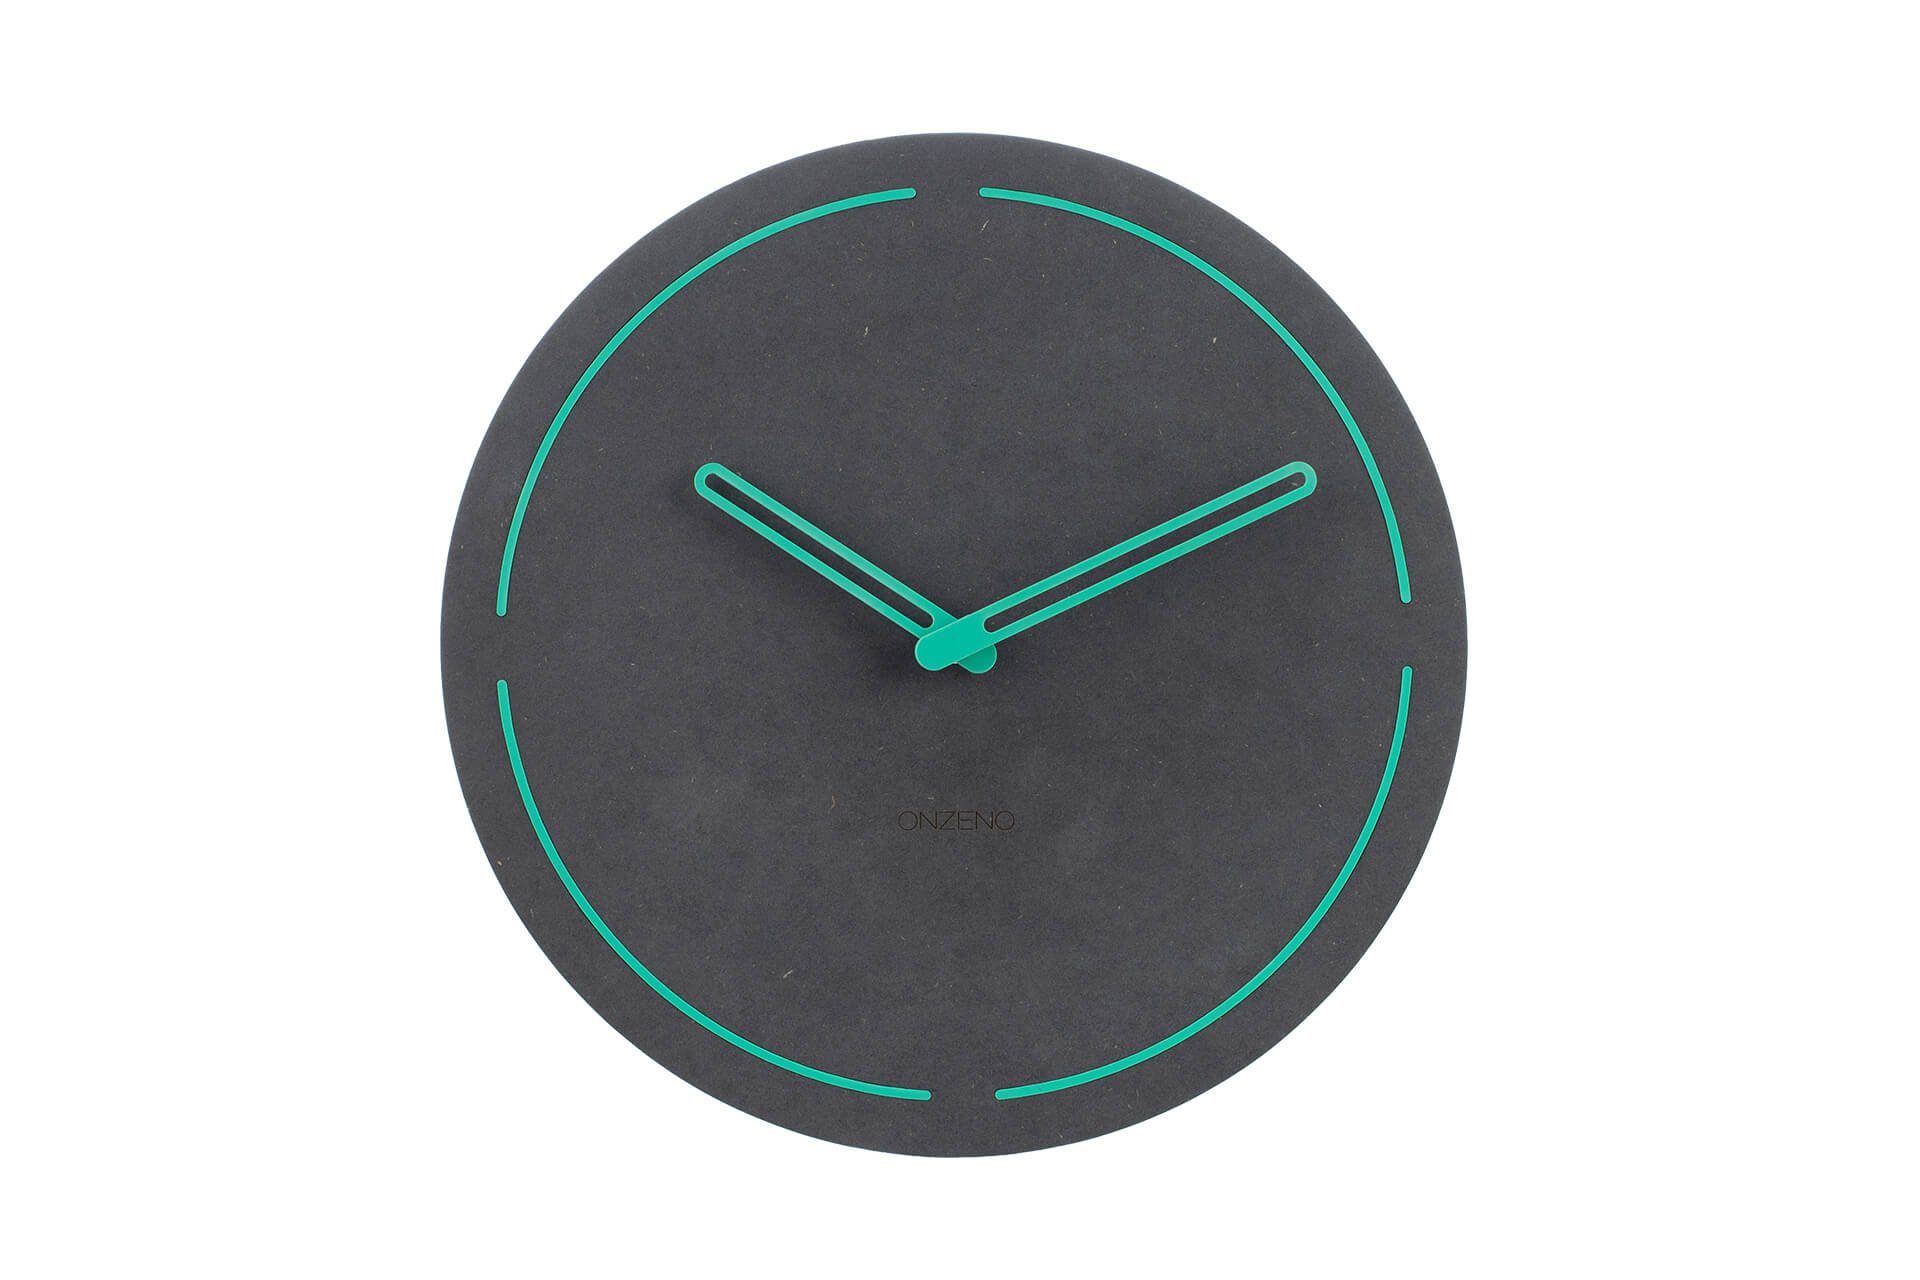 ONZENO Wanduhr »THE NEON.« (handgefertigte Design-Uhr) online kaufen | OTTO